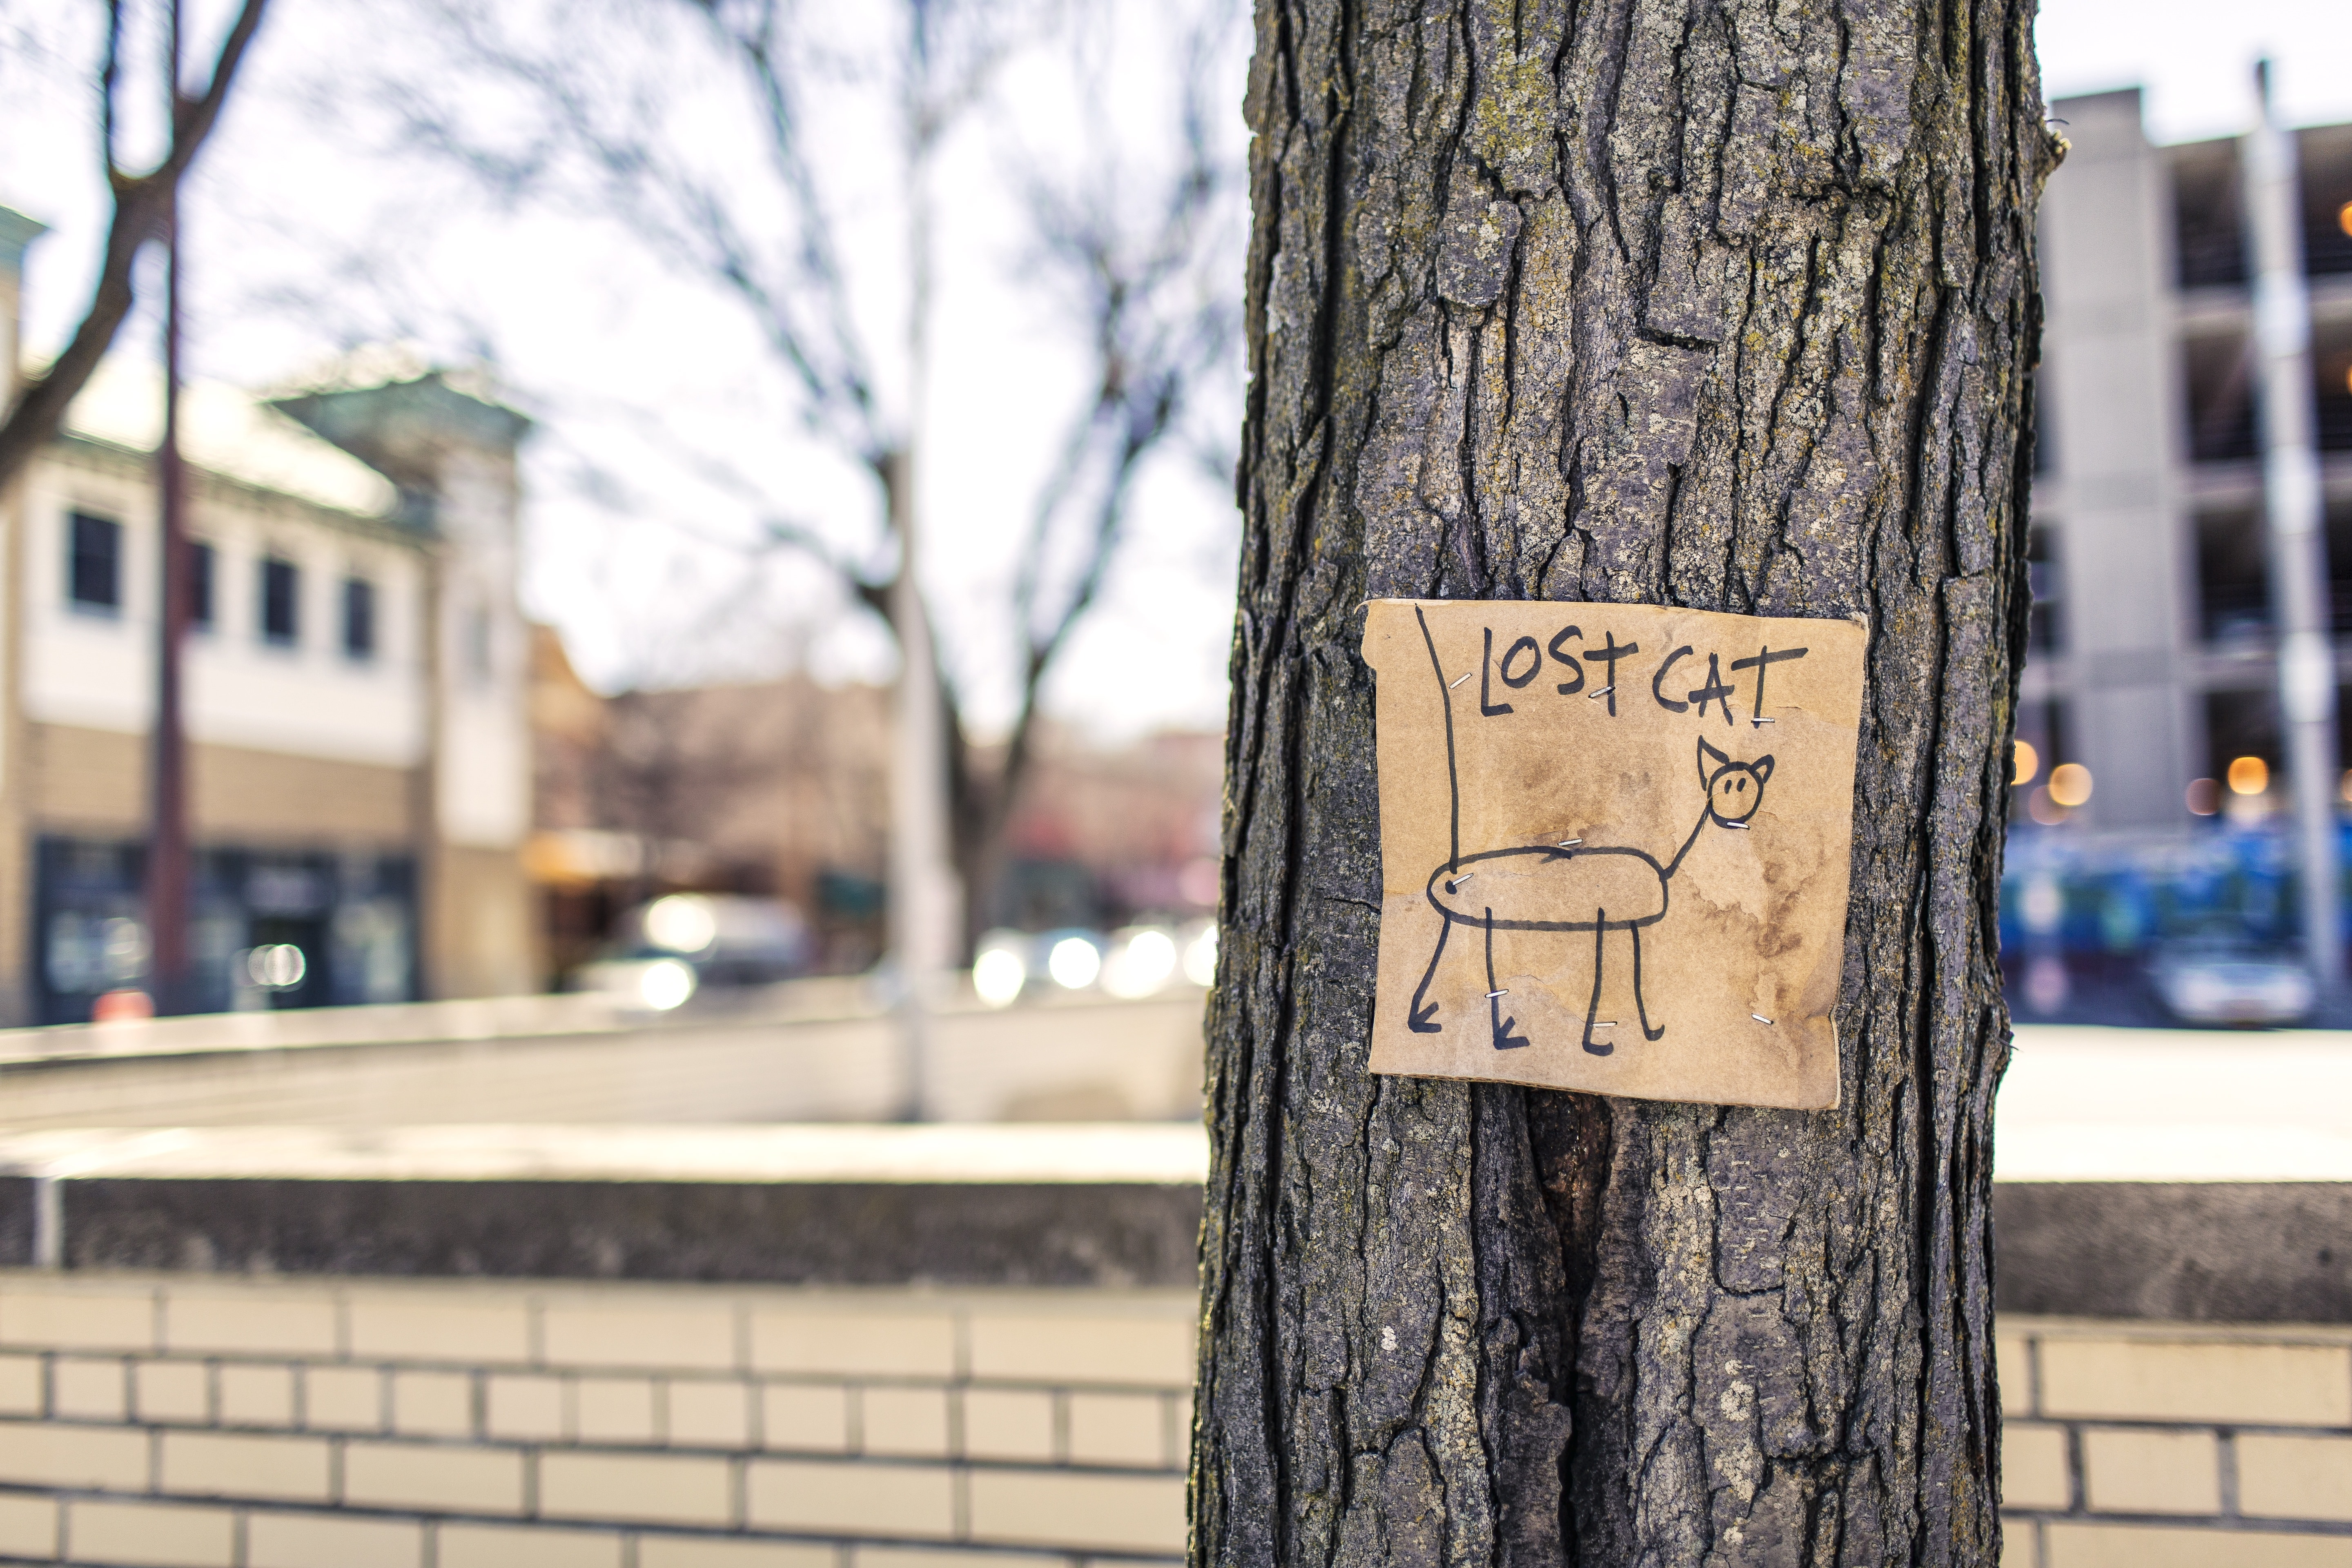 Sign, Tree, Fun, Art, Lost Cat, tree trunk, tree